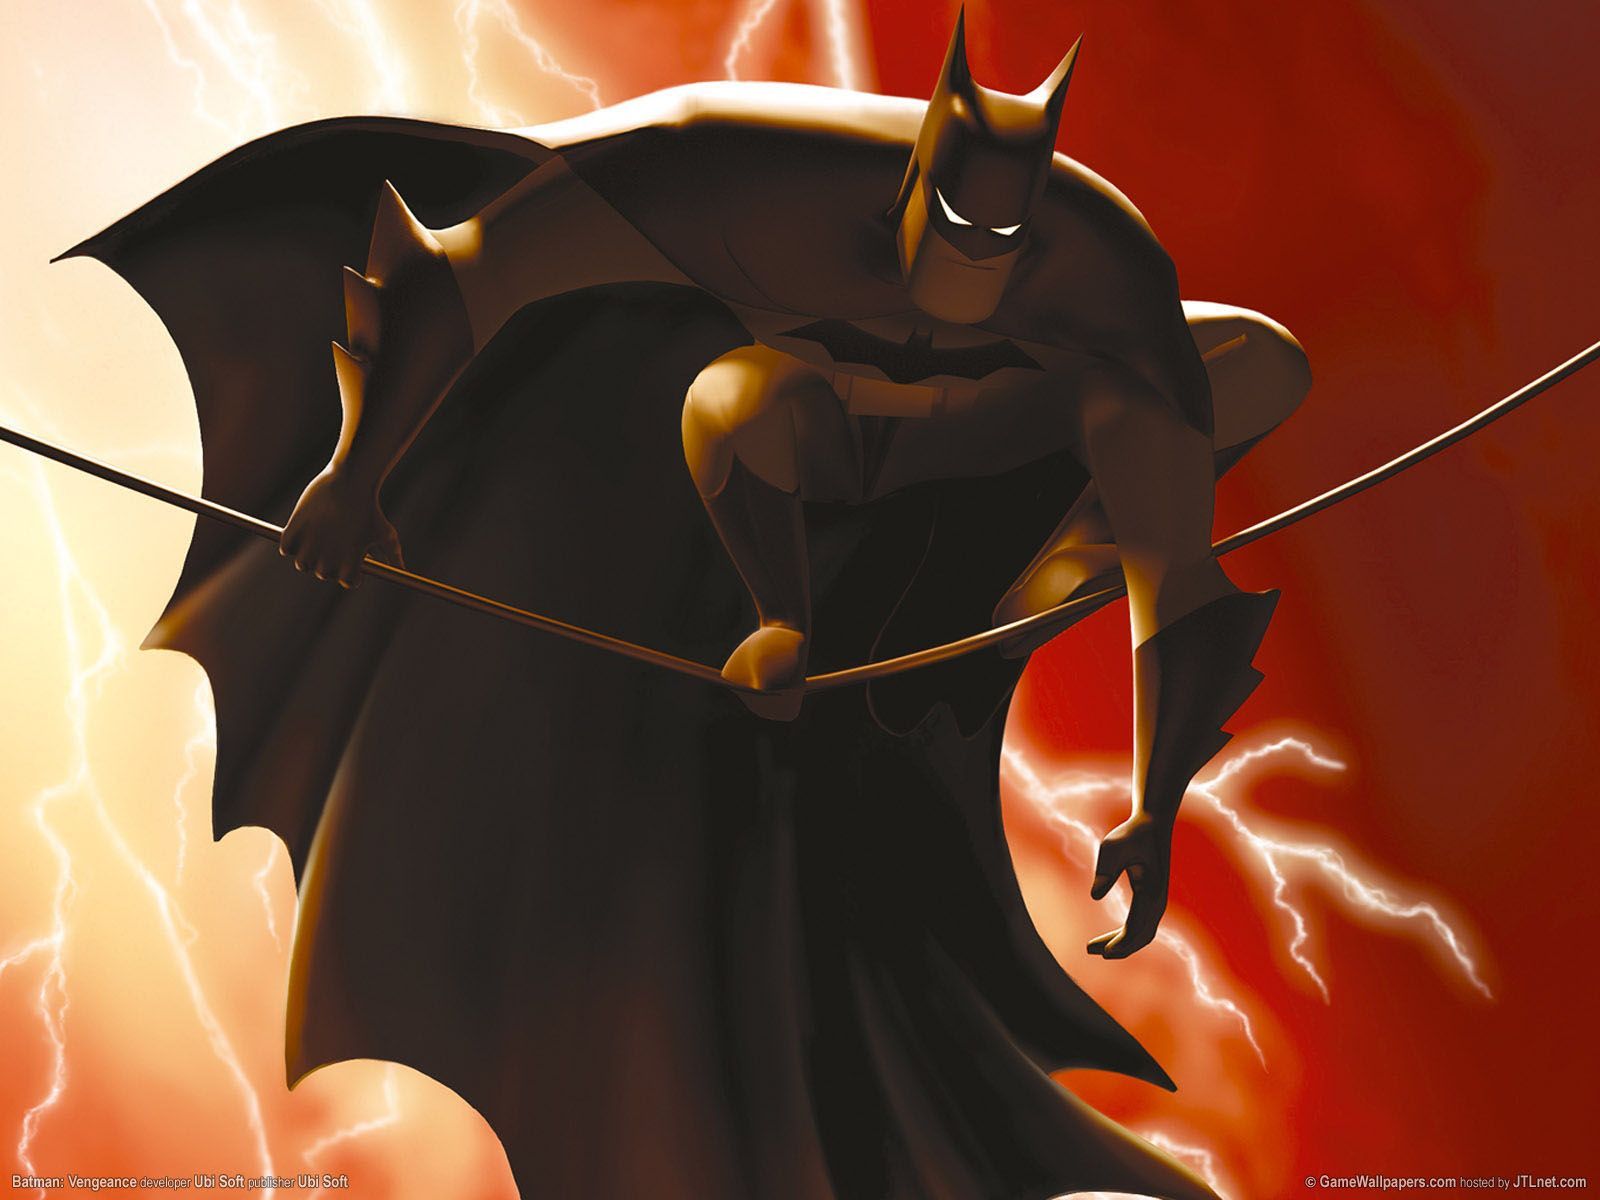 Bat in a wire. Batman cartoon, Batman comic wallpaper, Batman comics